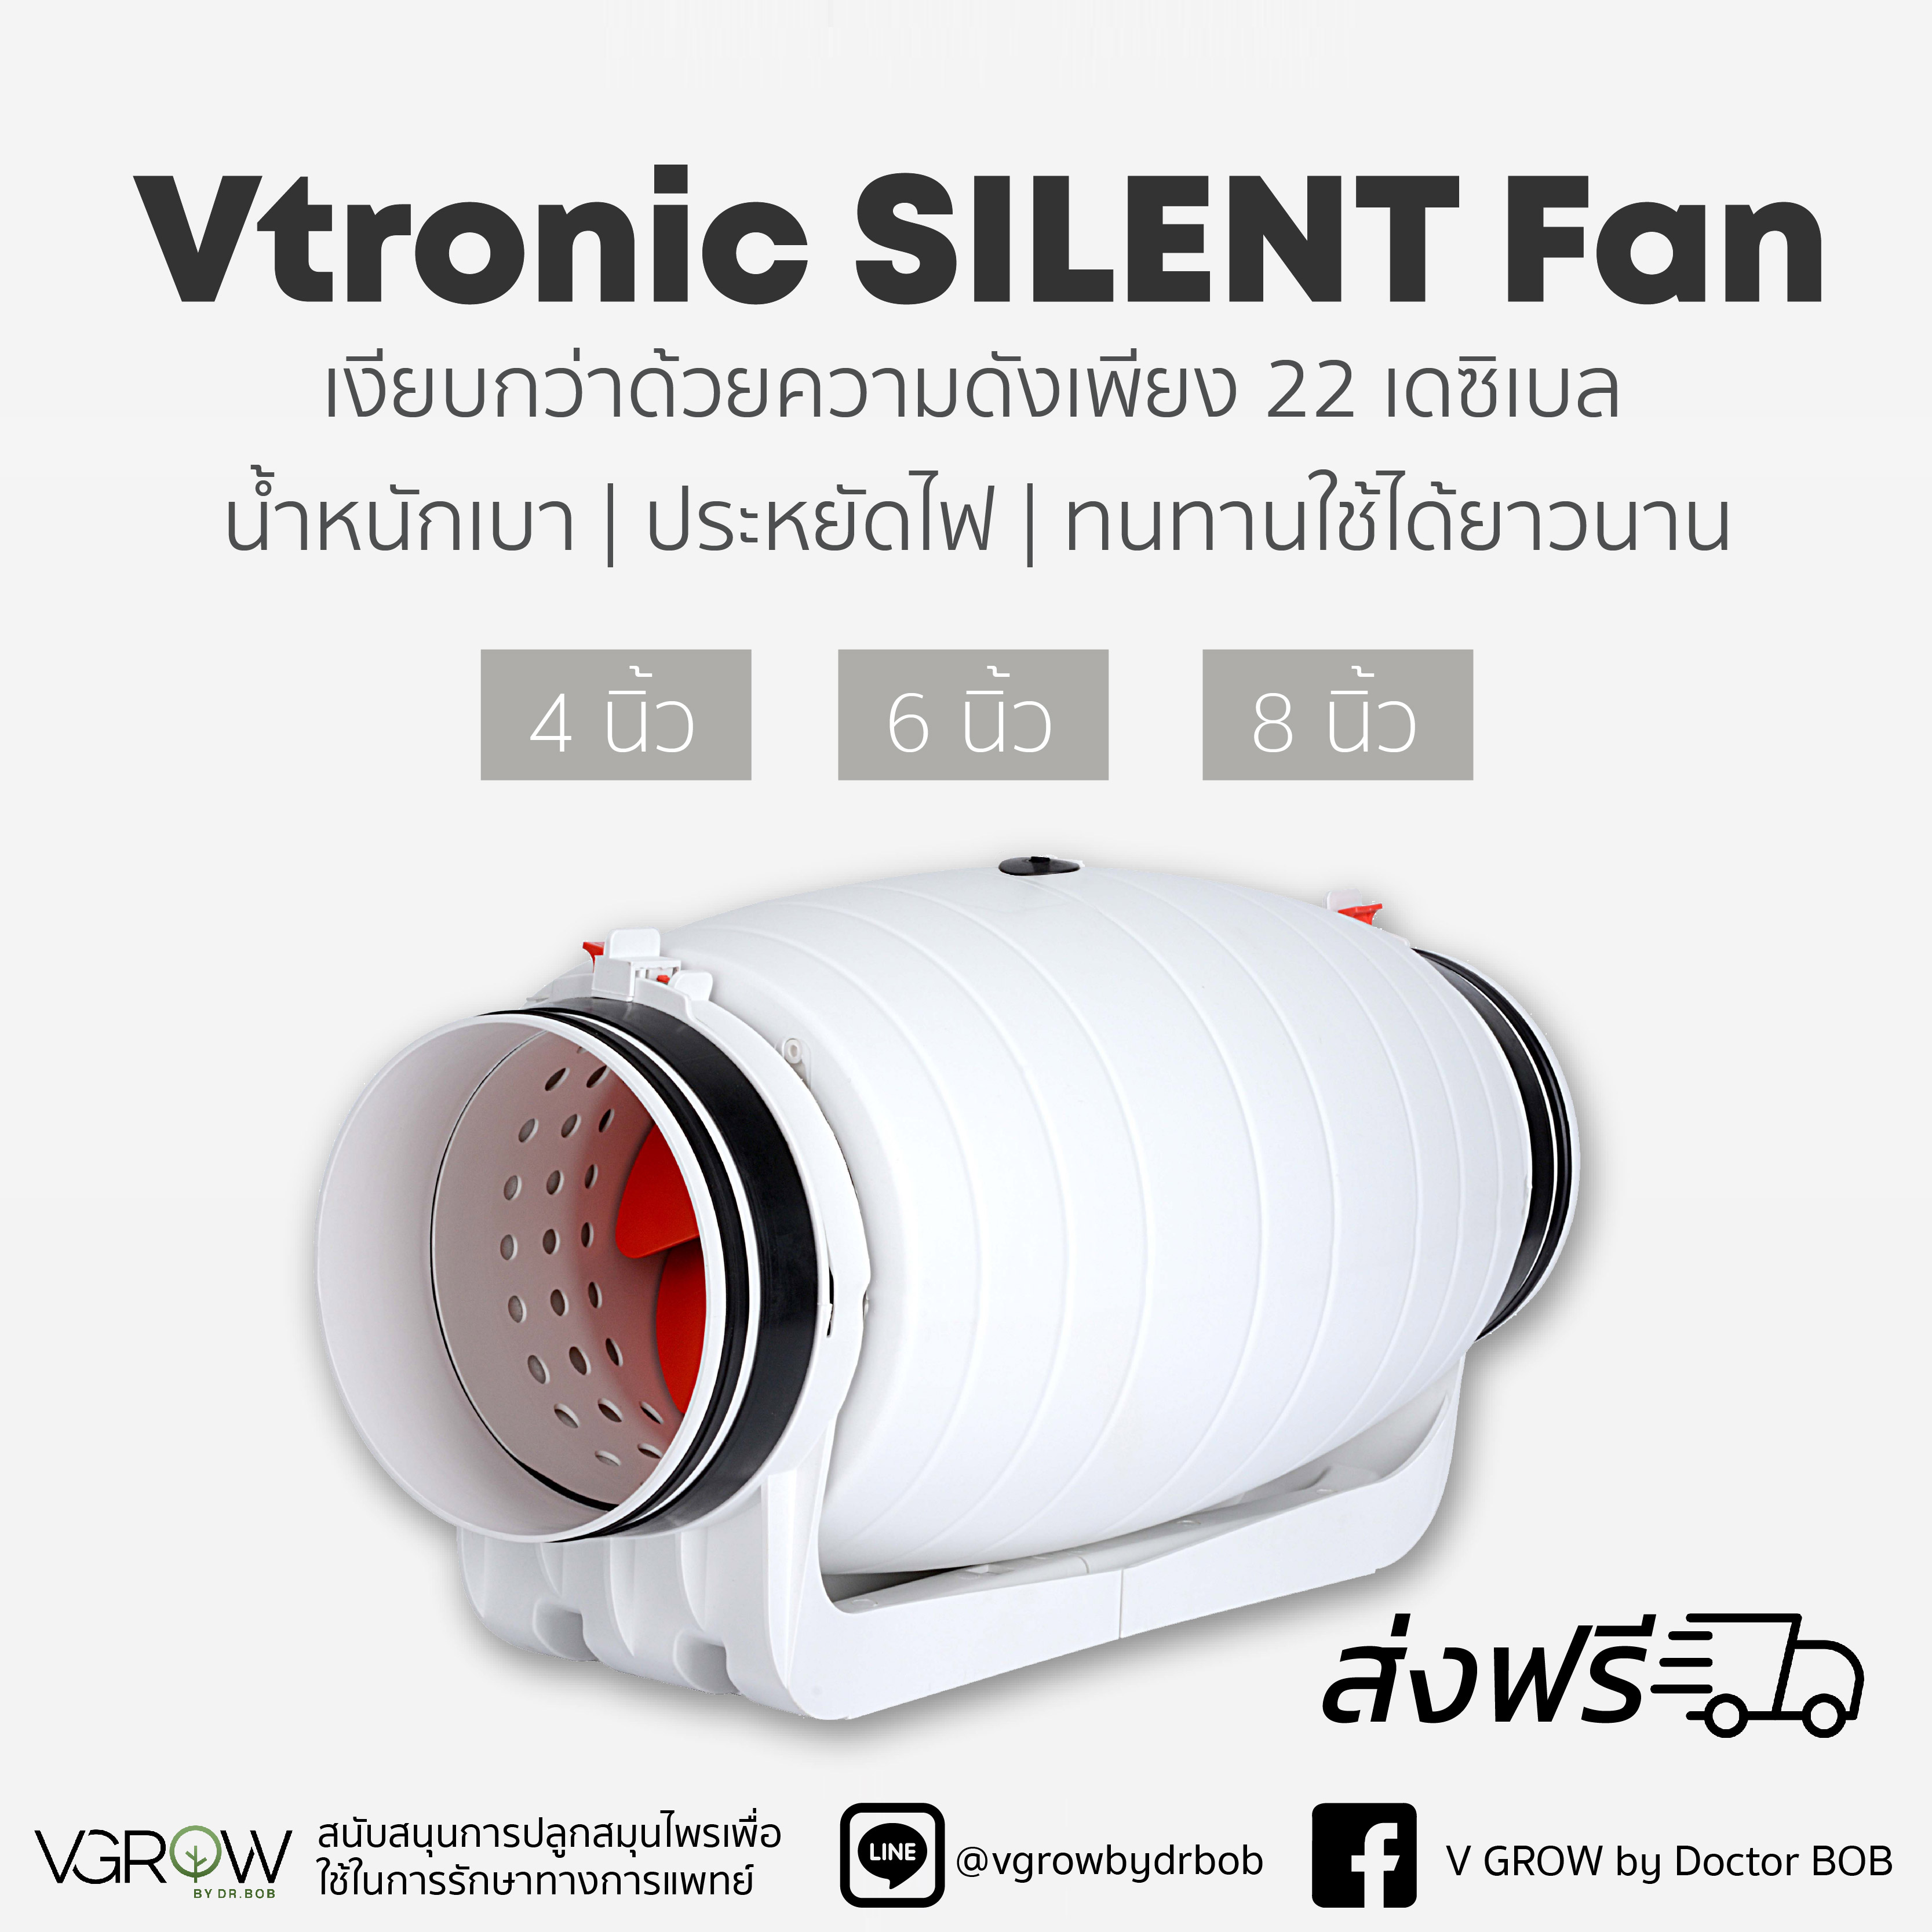 [ส่งฟรี] Vtronic SILENT fan พัดลมระบายอากาศ รุ่น Silent Fan ขนาด 4,6,8 นิ้ว เสียงเงียบกว่า